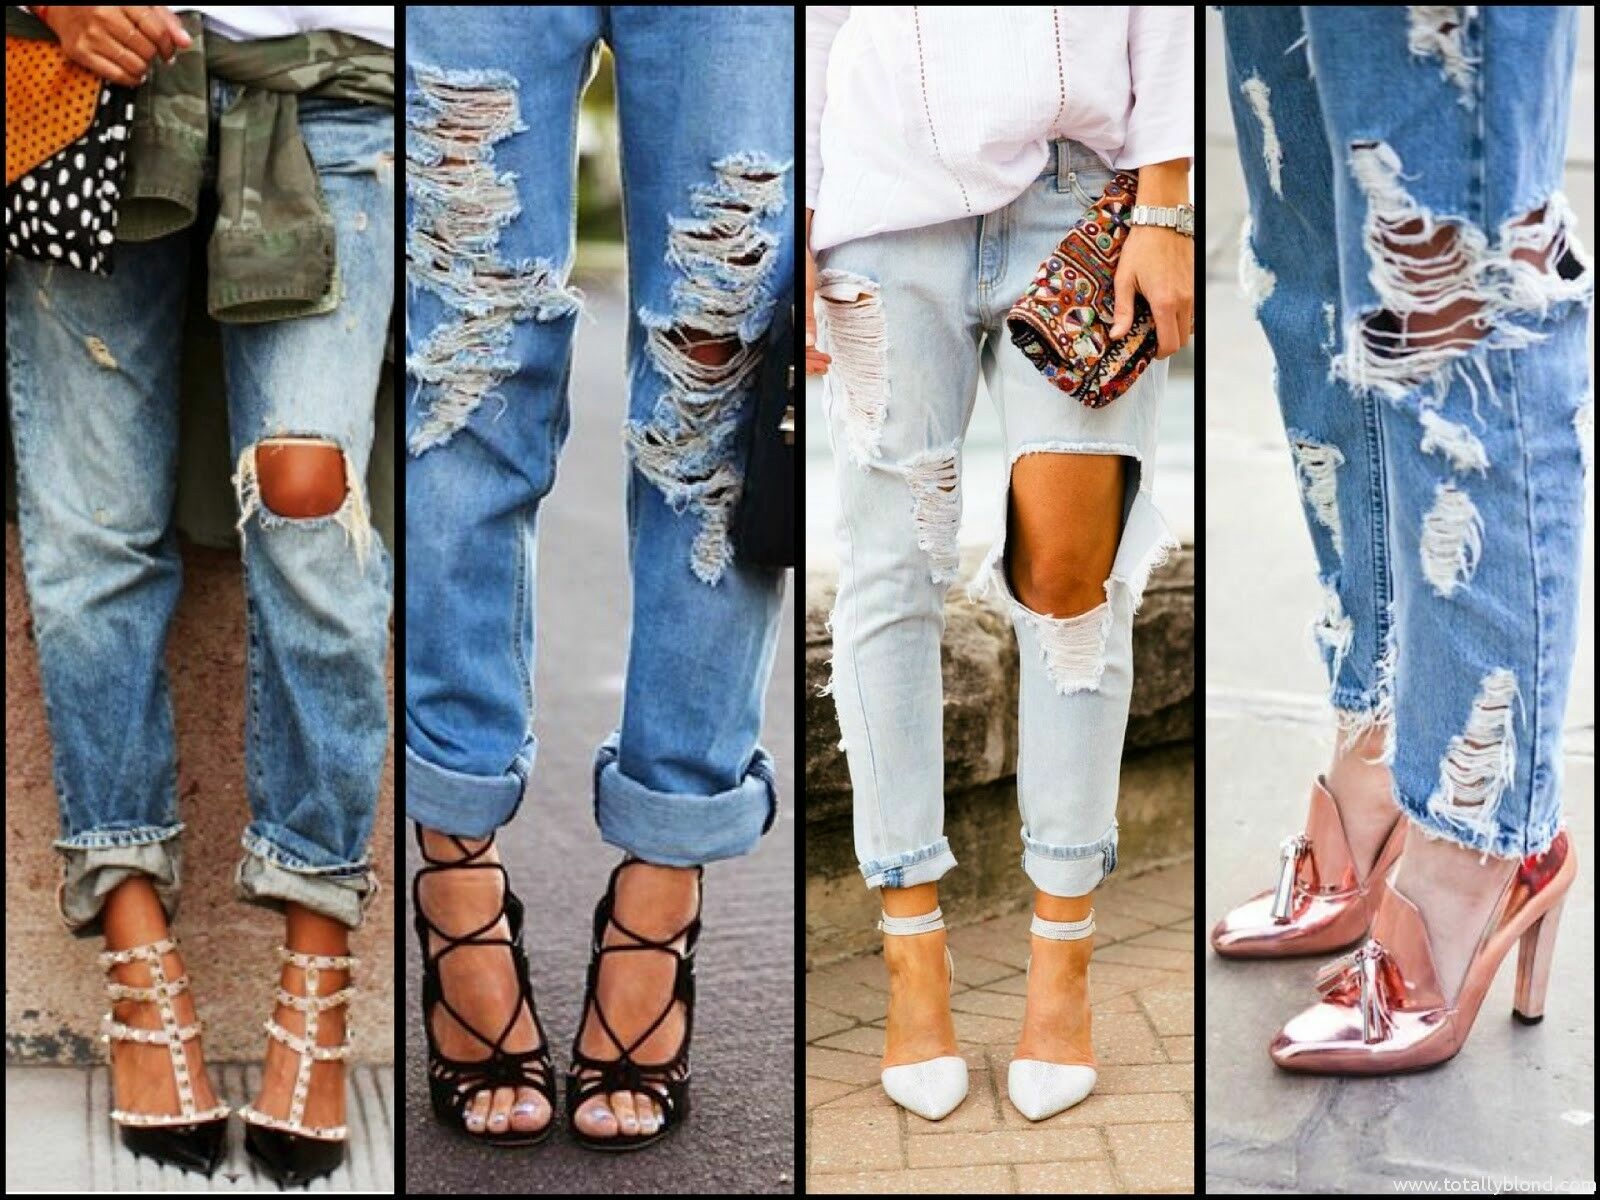 Извращение реальности: почему так живуча мода на рваные джинсы